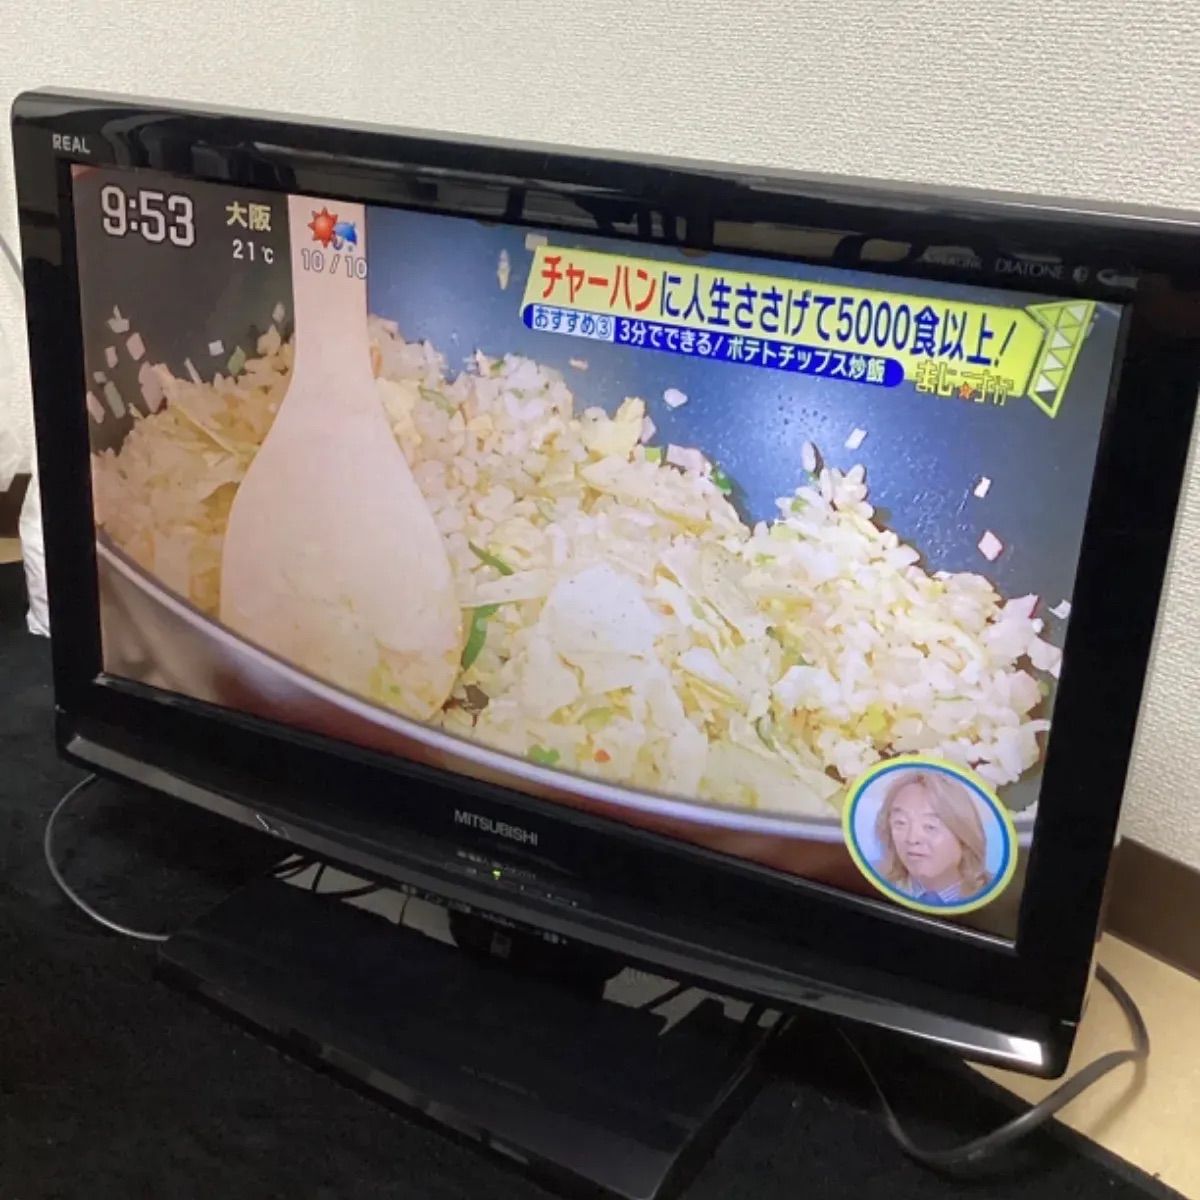 動作確認済】三菱液晶カラーテレビ REAL LCD-22MX45 - メルカリ